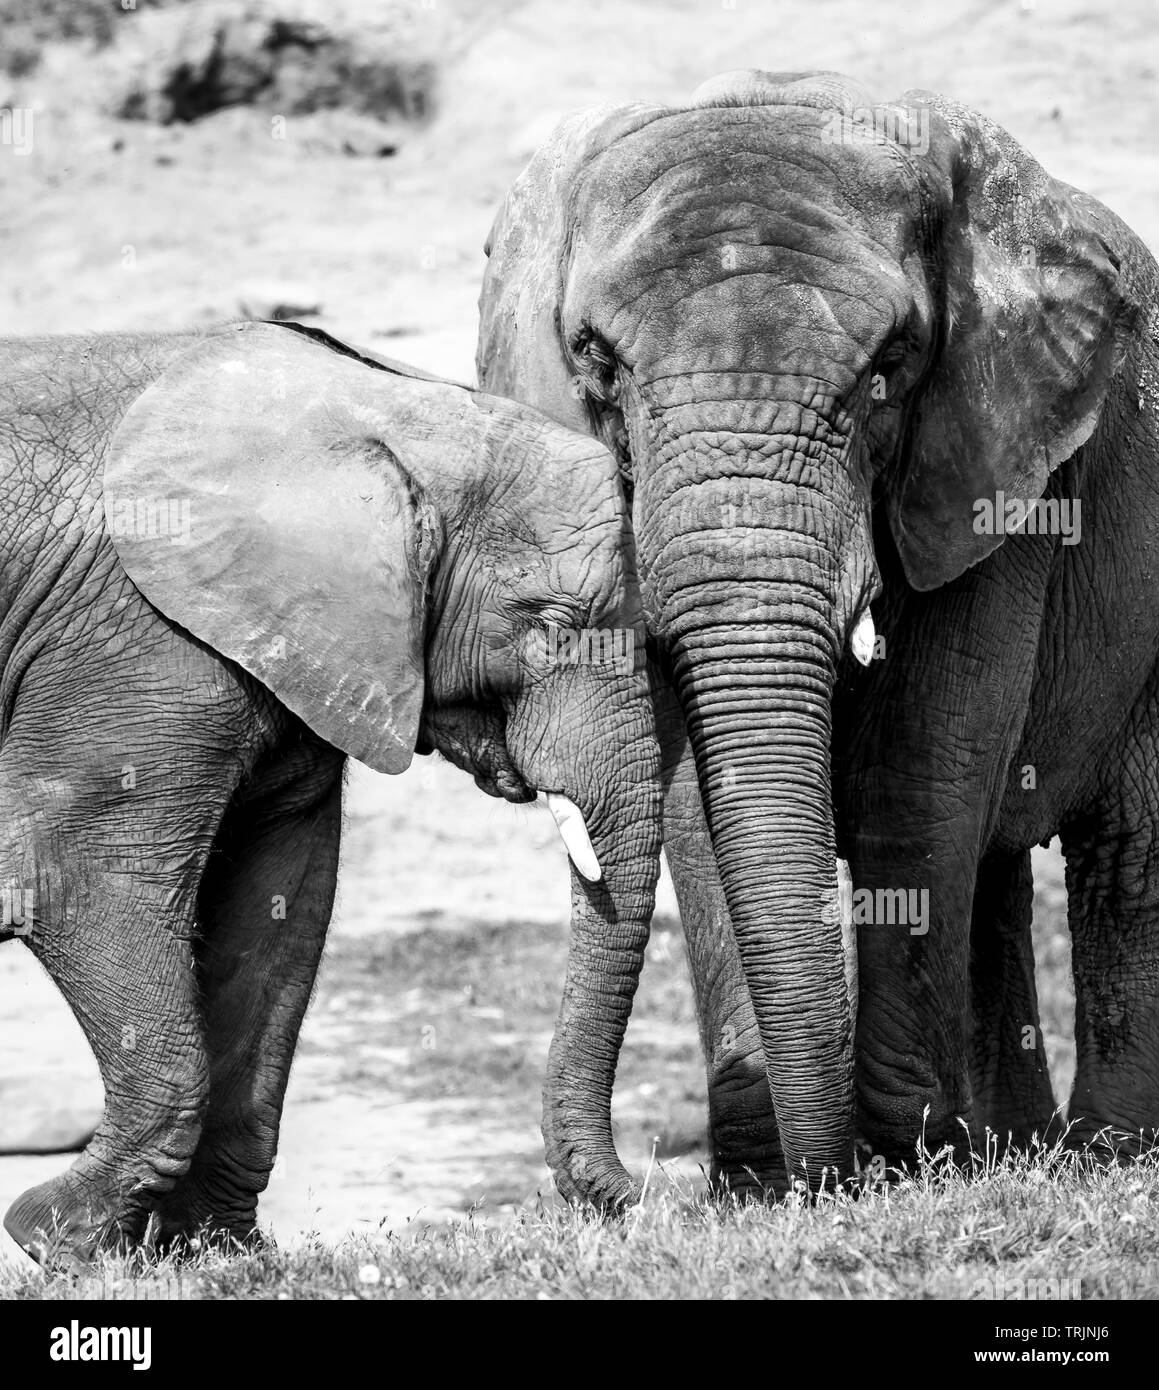 Gros plan noir et blanc montrant une forte affection, un lien, un amour entre le veau d'éléphant d'Afrique et sa mère (Loxodonta) ensemble. Banque D'Images